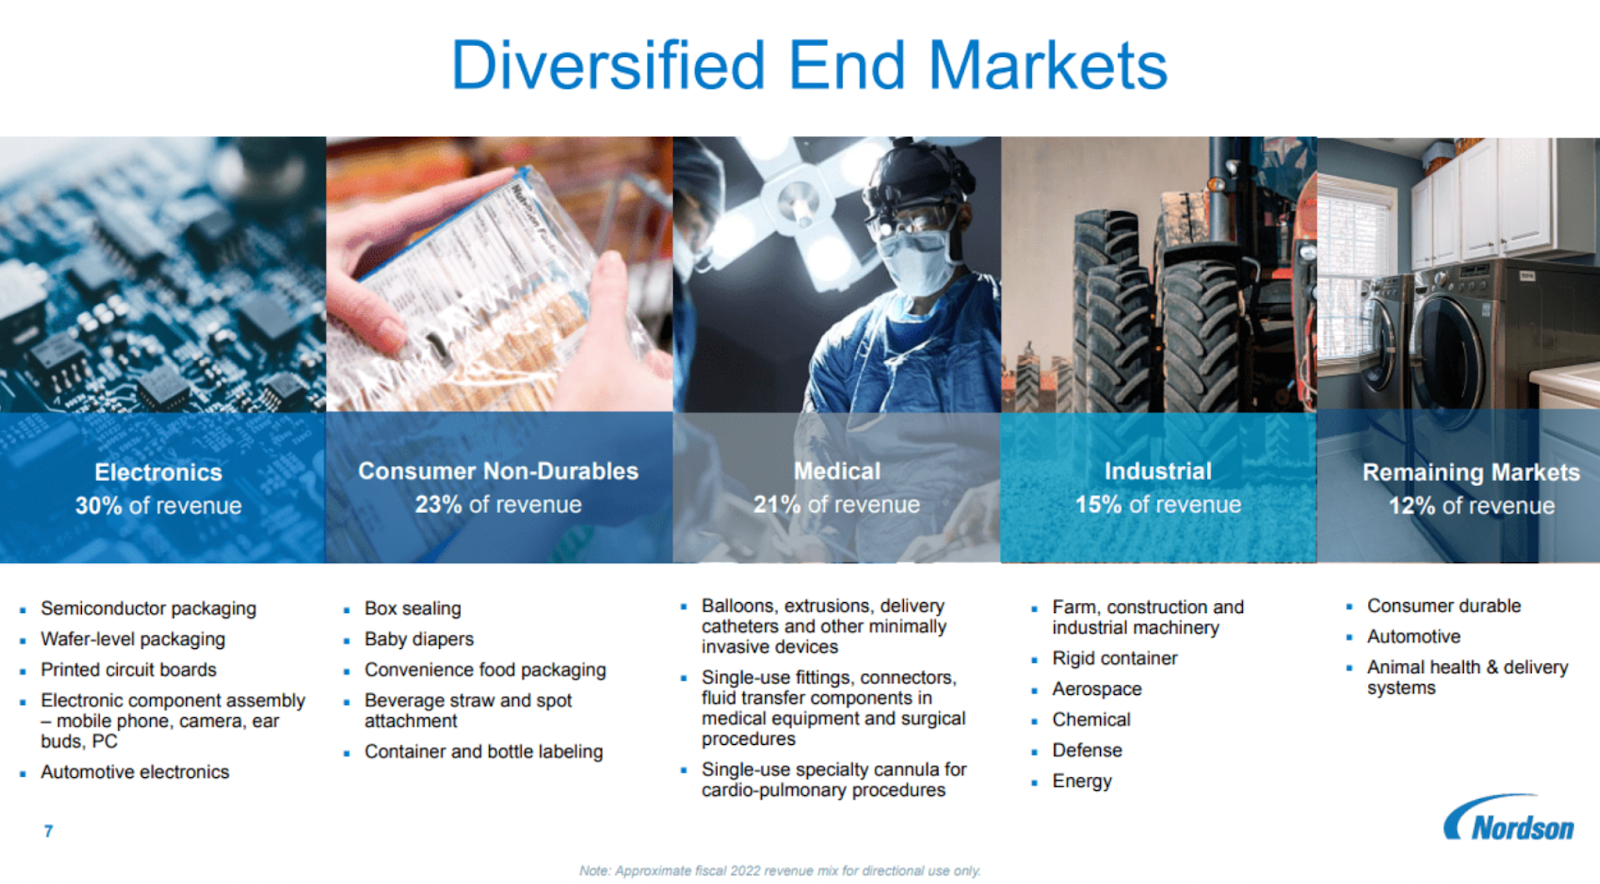 Nordson Corp. (NASDAQ: NDSN) investor presentation diversified end markets slide